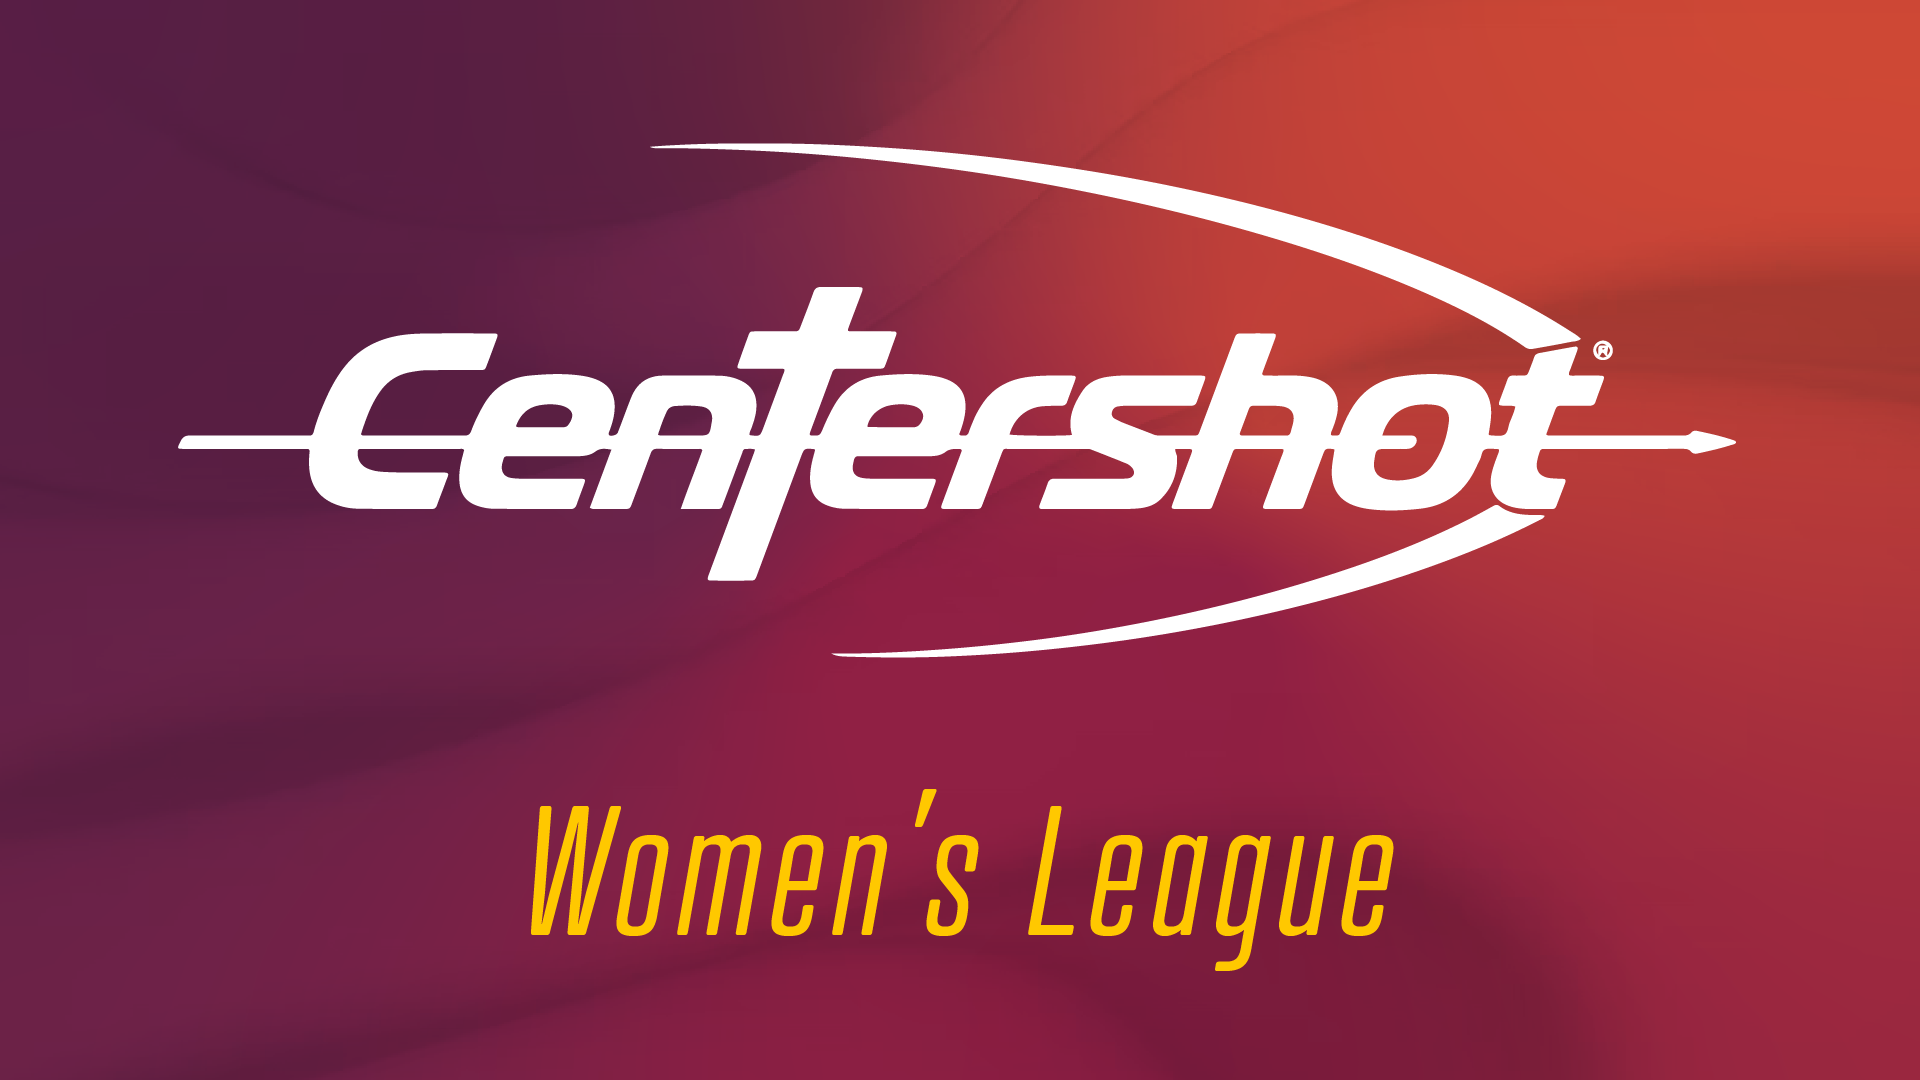 Centershot Women's League